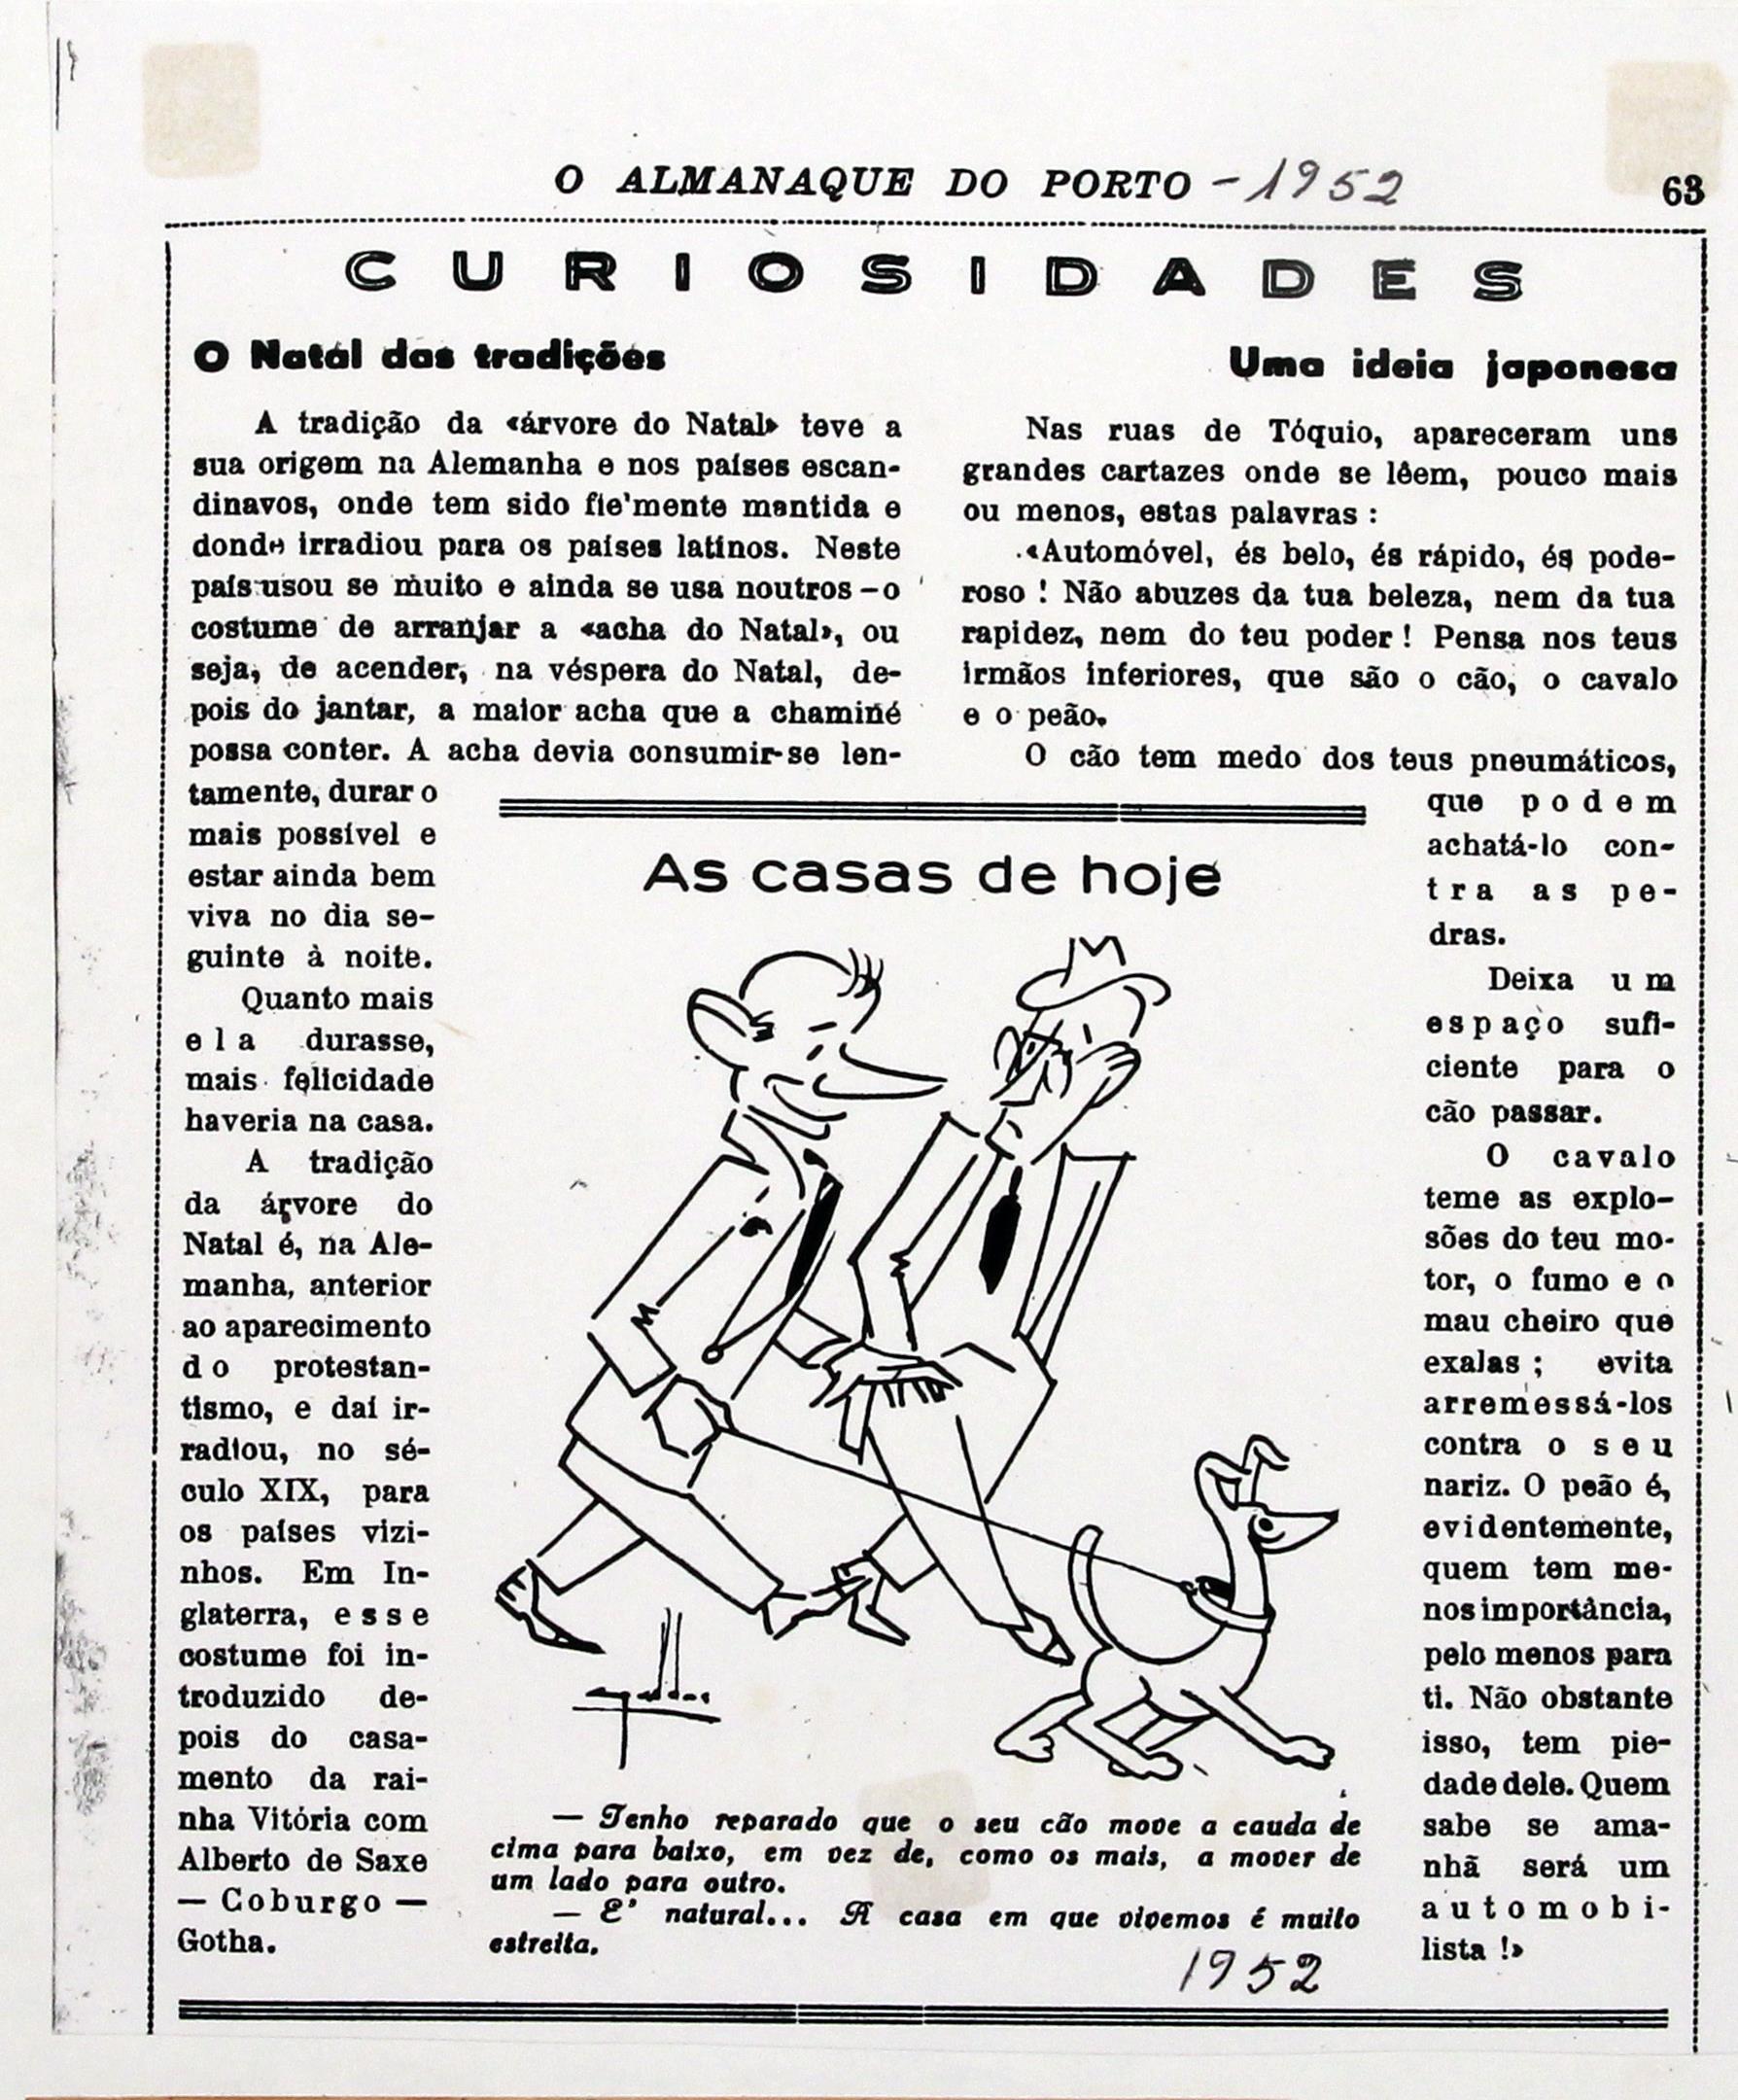 Cruz Caldas e Aniceto Carmona, caricaturista lisboeta : «O Almanaque do Porto» : as casas de hoje : desenho humorístico